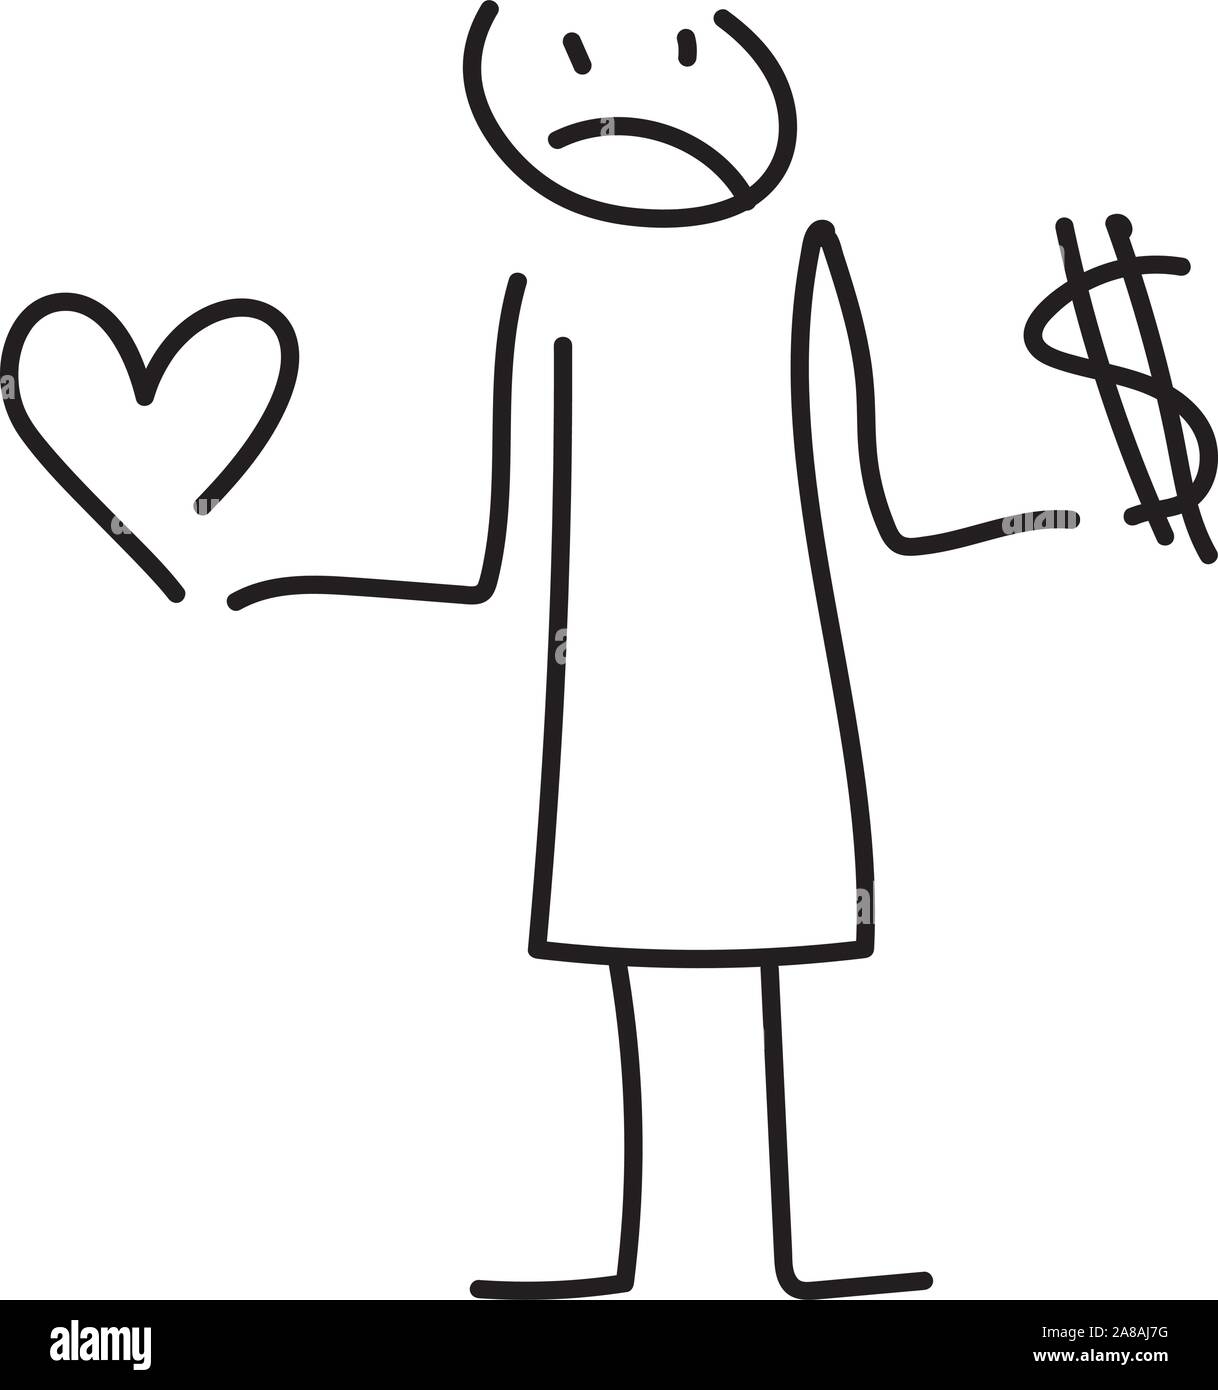 Choix difficile entre l'argent et le bonheur - illustration Illustration de Vecteur